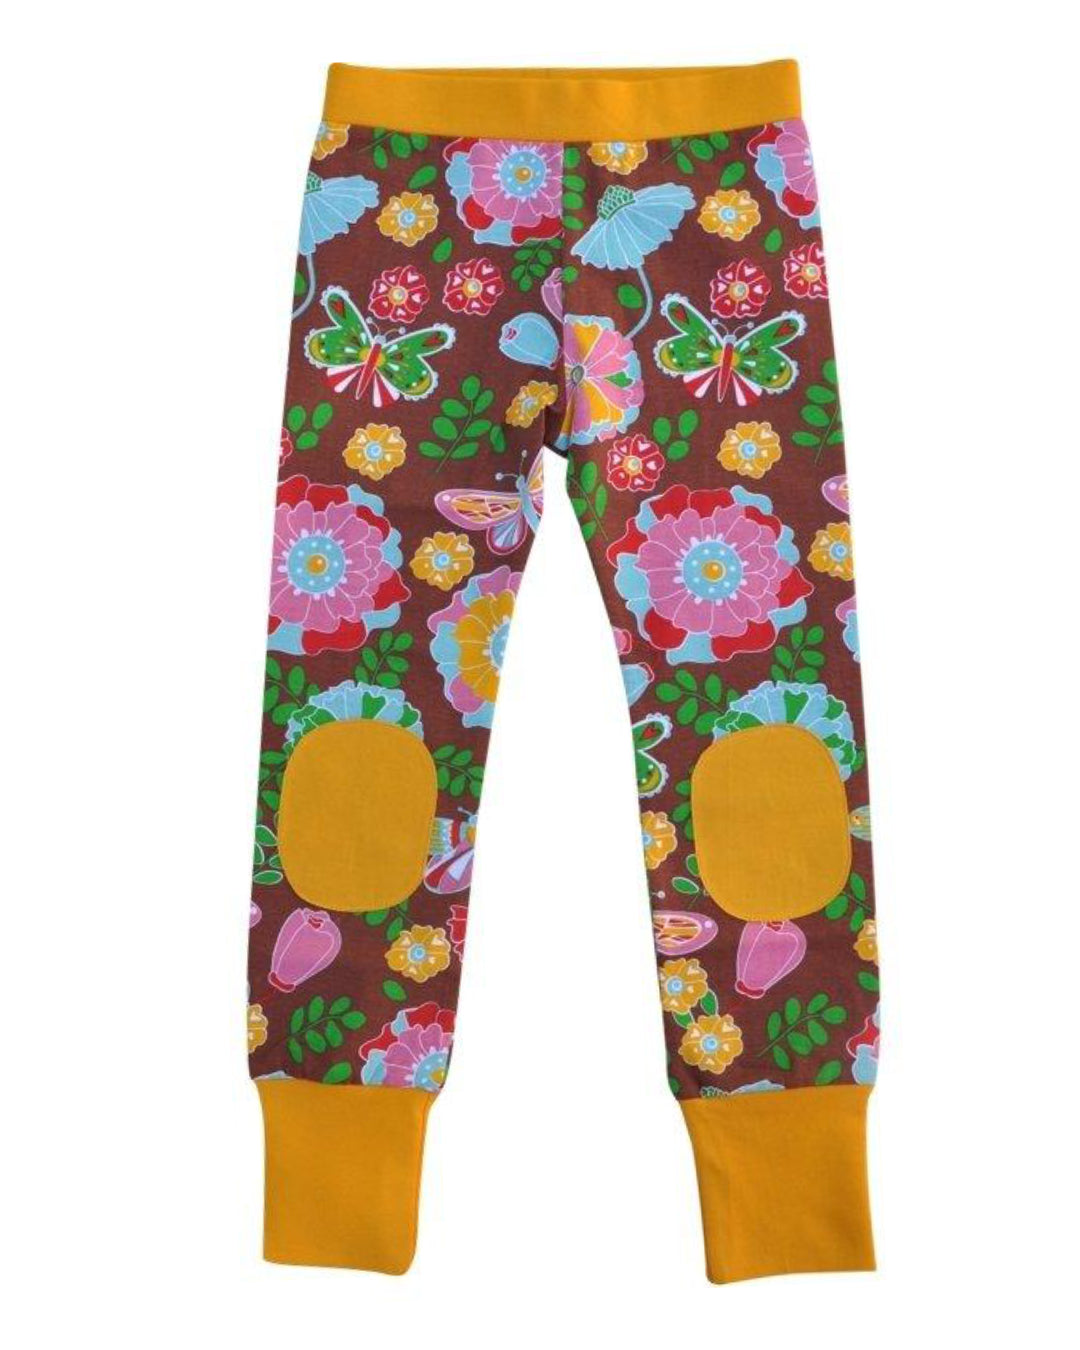 braune Kinder Legging Hose mit Blumenprint von moromini aus bkA BW